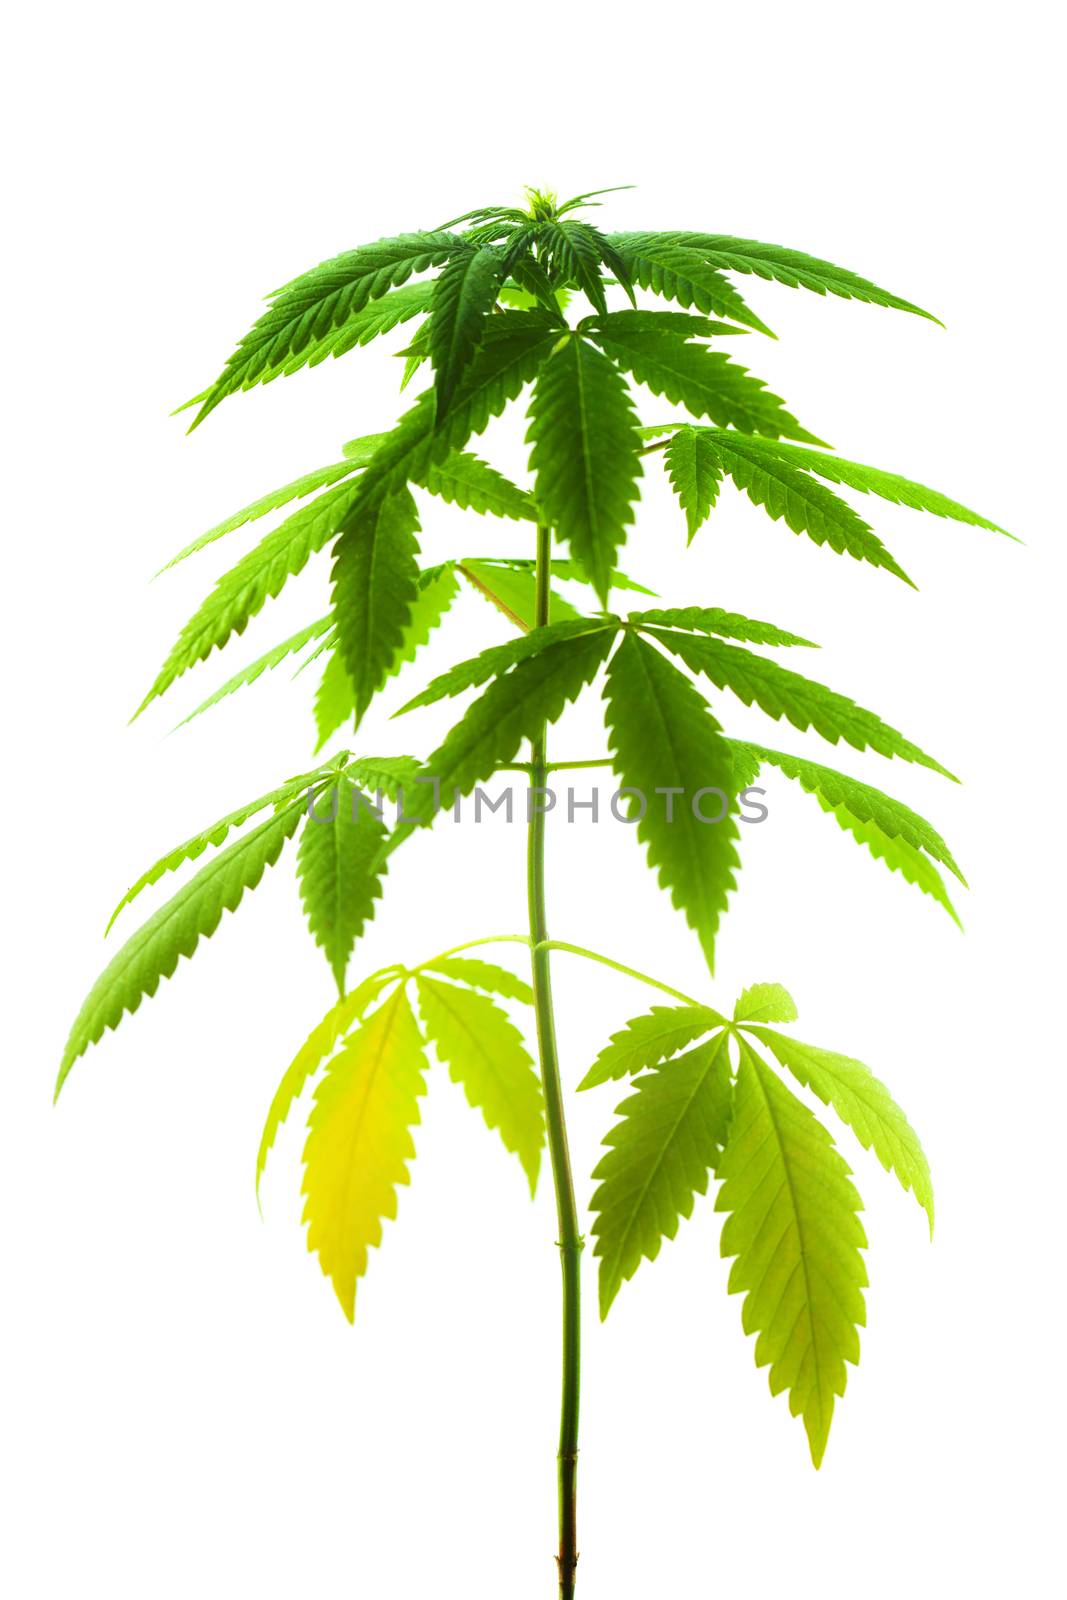 Marijuana plant isolated on white background, female